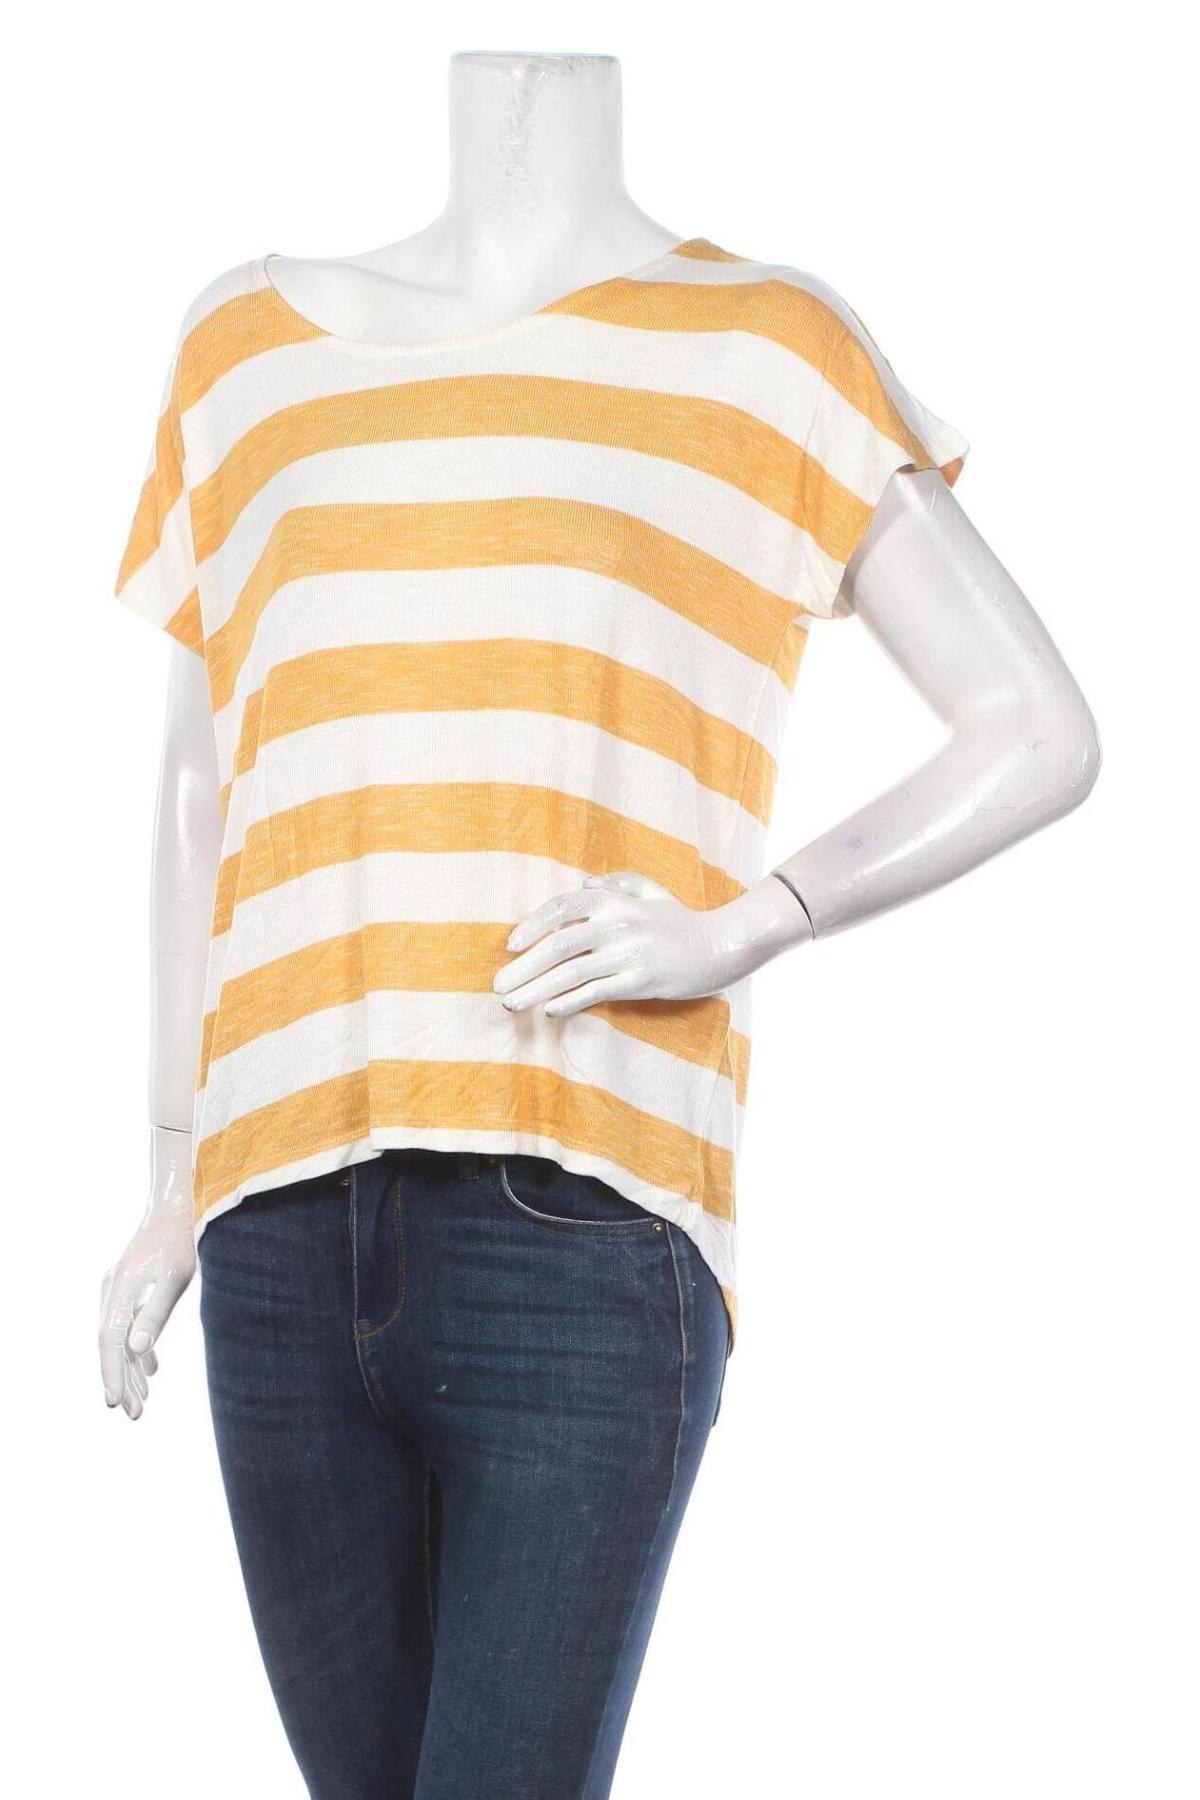 Γυναικεία μπλούζα Vero Moda, Μέγεθος L, Χρώμα Πορτοκαλί, 96% βισκόζη, 4% ελαστάνη, Τιμή 12,63 €